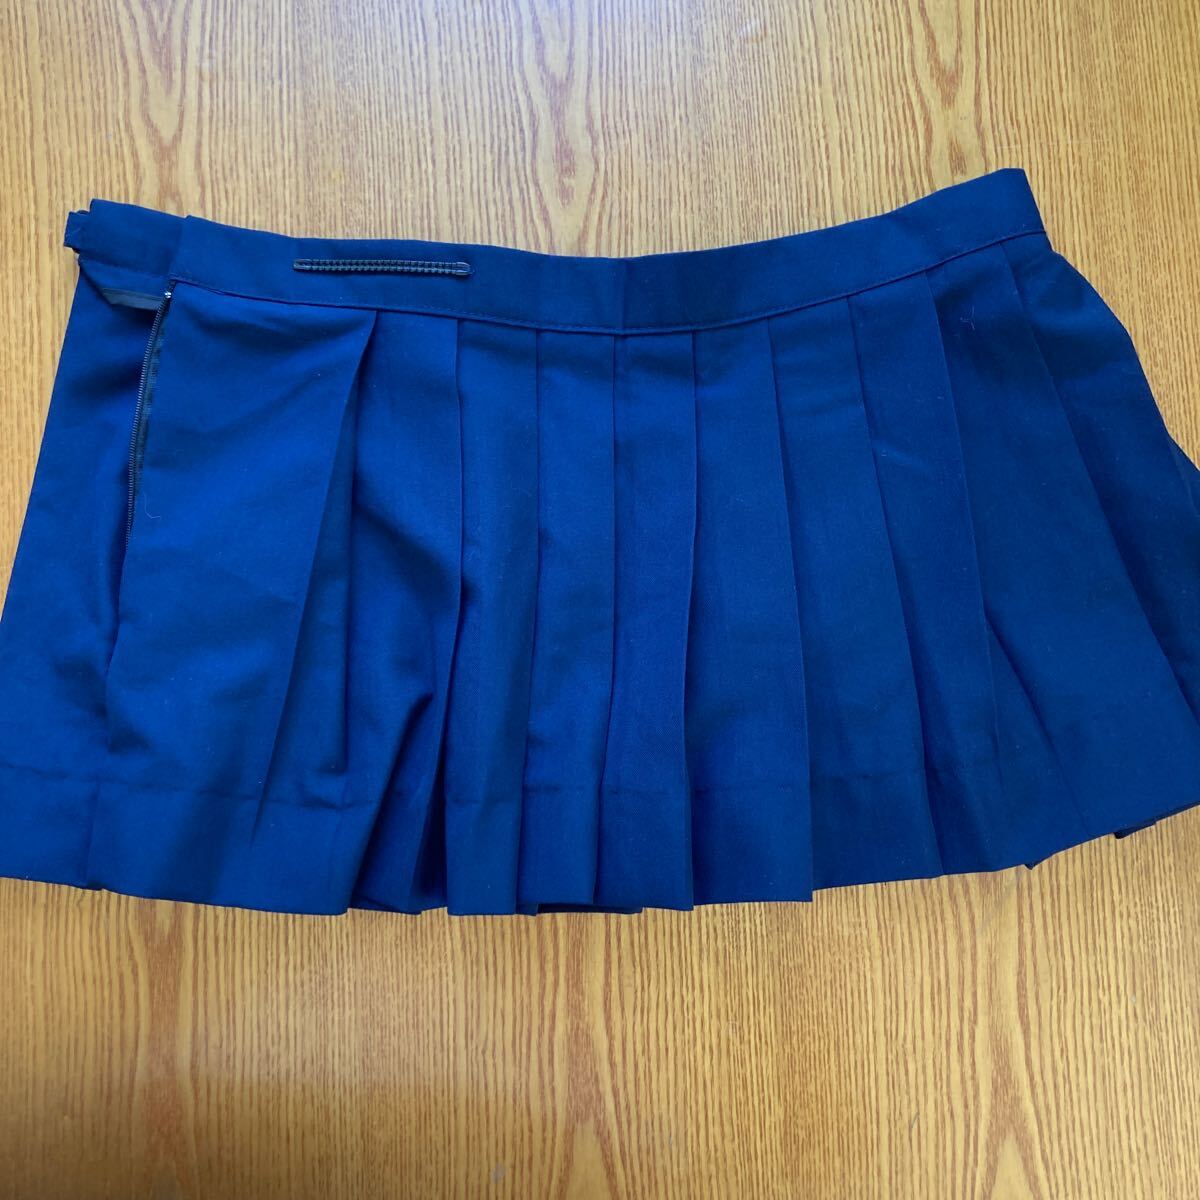 コスプレ衣装 制服 スカート ウエスト80くらい 総丈29cmくらい マイクロミニスカート 紺色 XXLの画像1